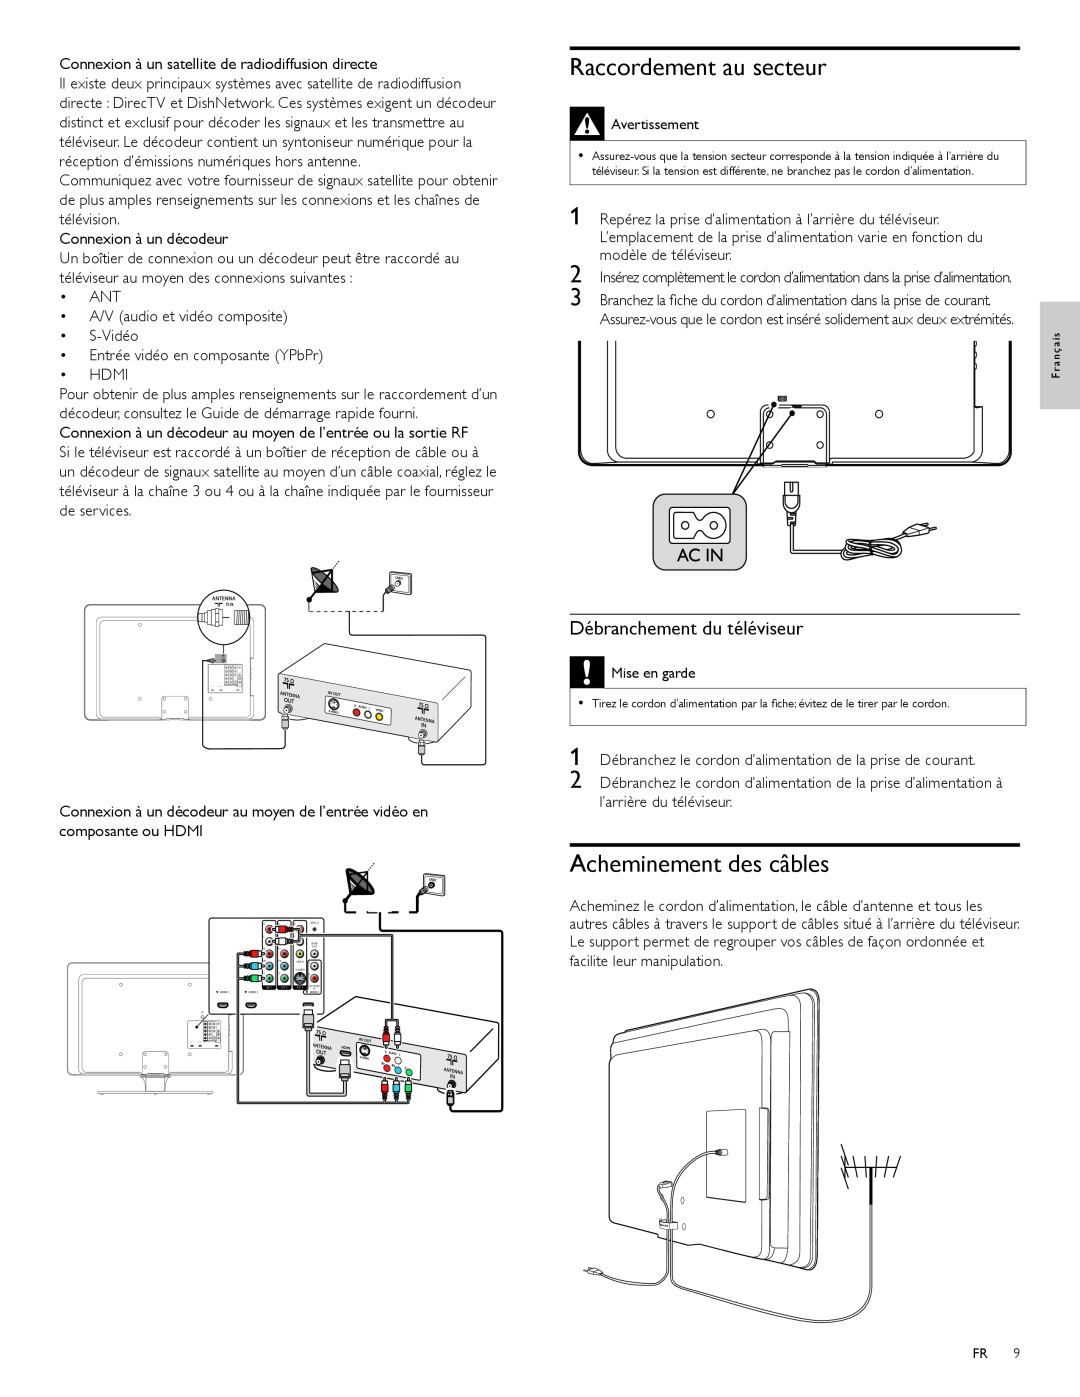 Magnavox 47MF439B user manual Raccordement au secteur, Acheminement des câbles, Débranchement du téléviseur 